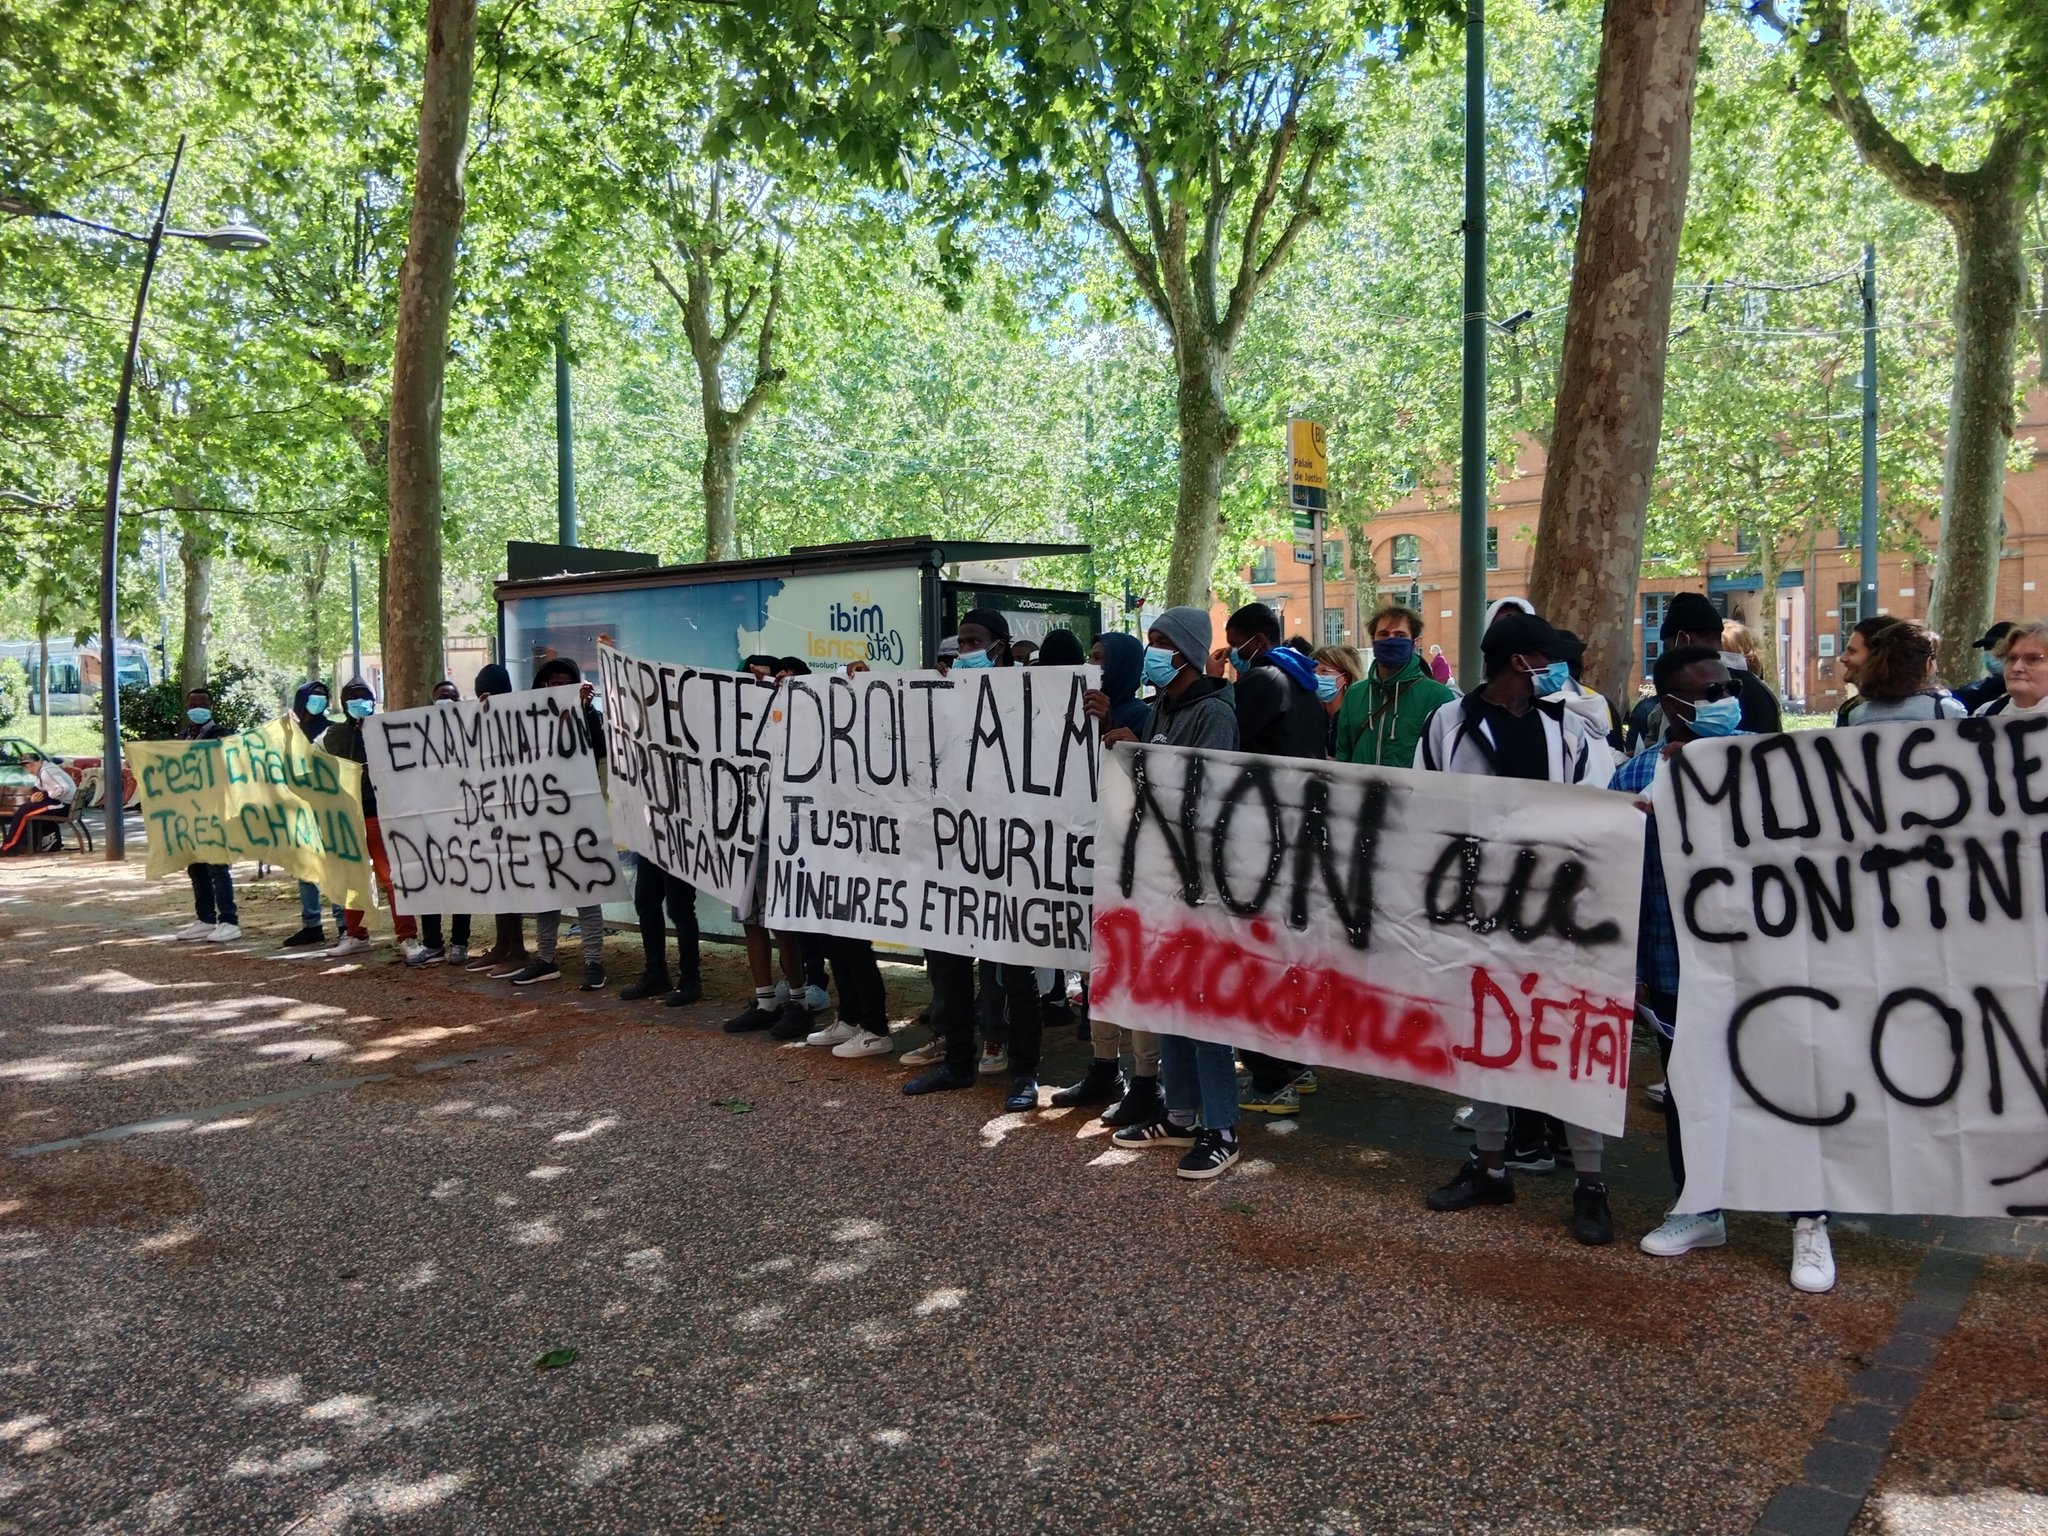 Toulouse. Les mineurs isolés étrangers rassemblés devant le tribunal pour la justice et la dignité 